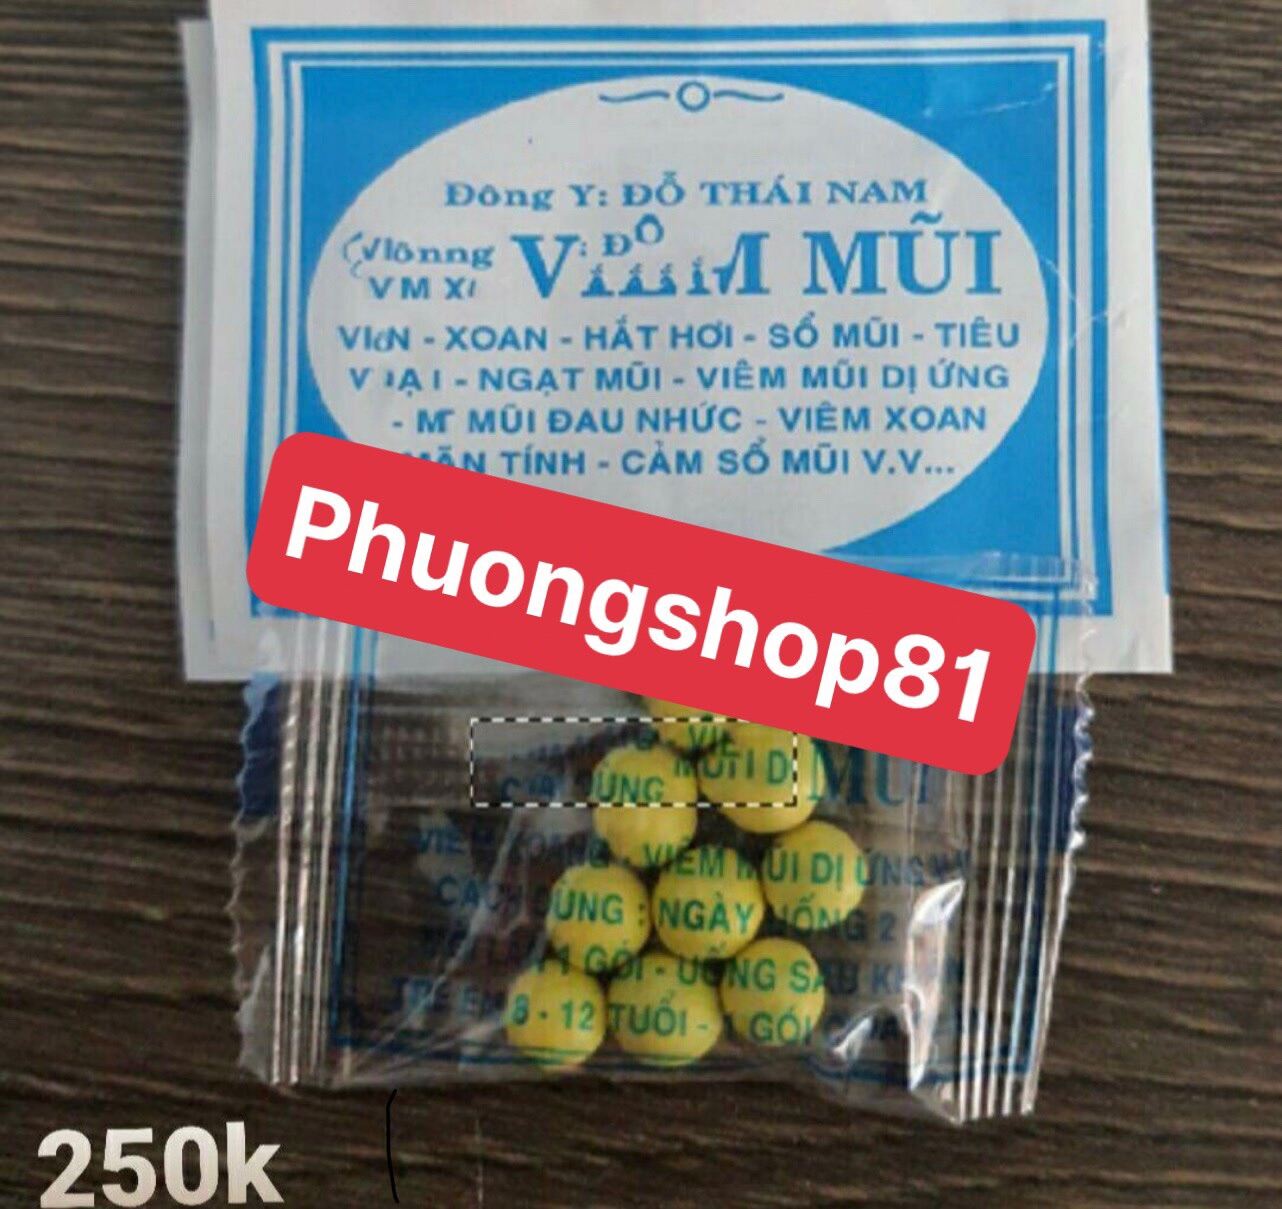 [Phuongshop81] 50 gói viêm mũi Viên đỗ thái nam giá rẻ